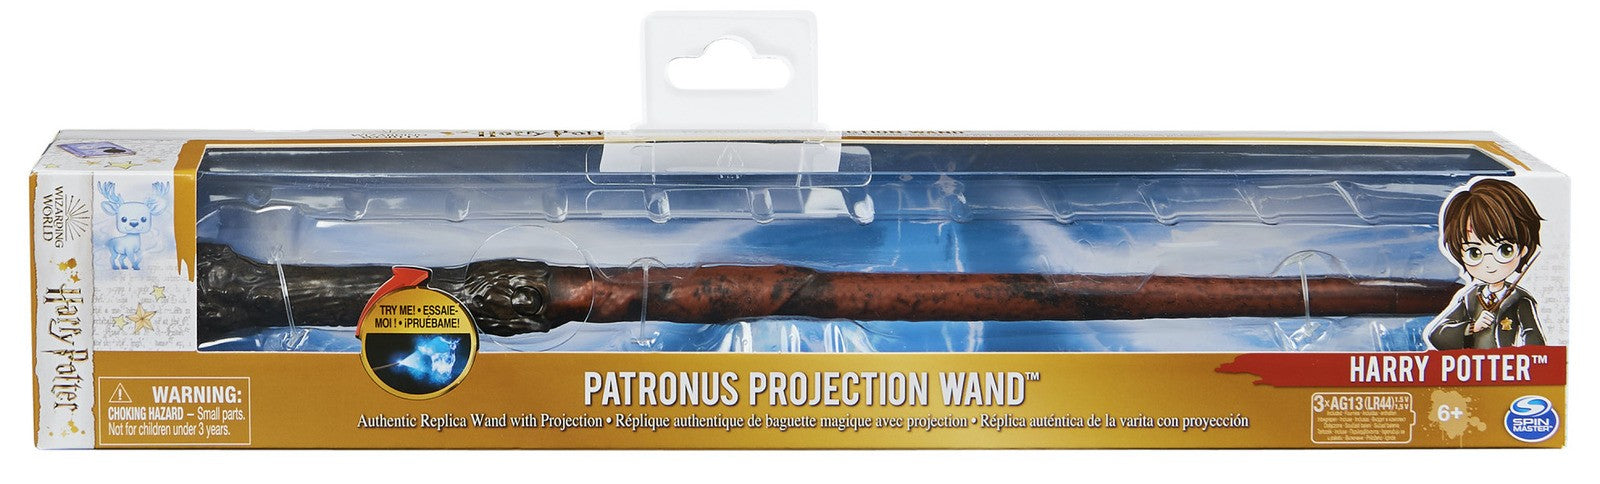 Baguette Magique Collector Patronus Harry Potter Wizarding World - BUT